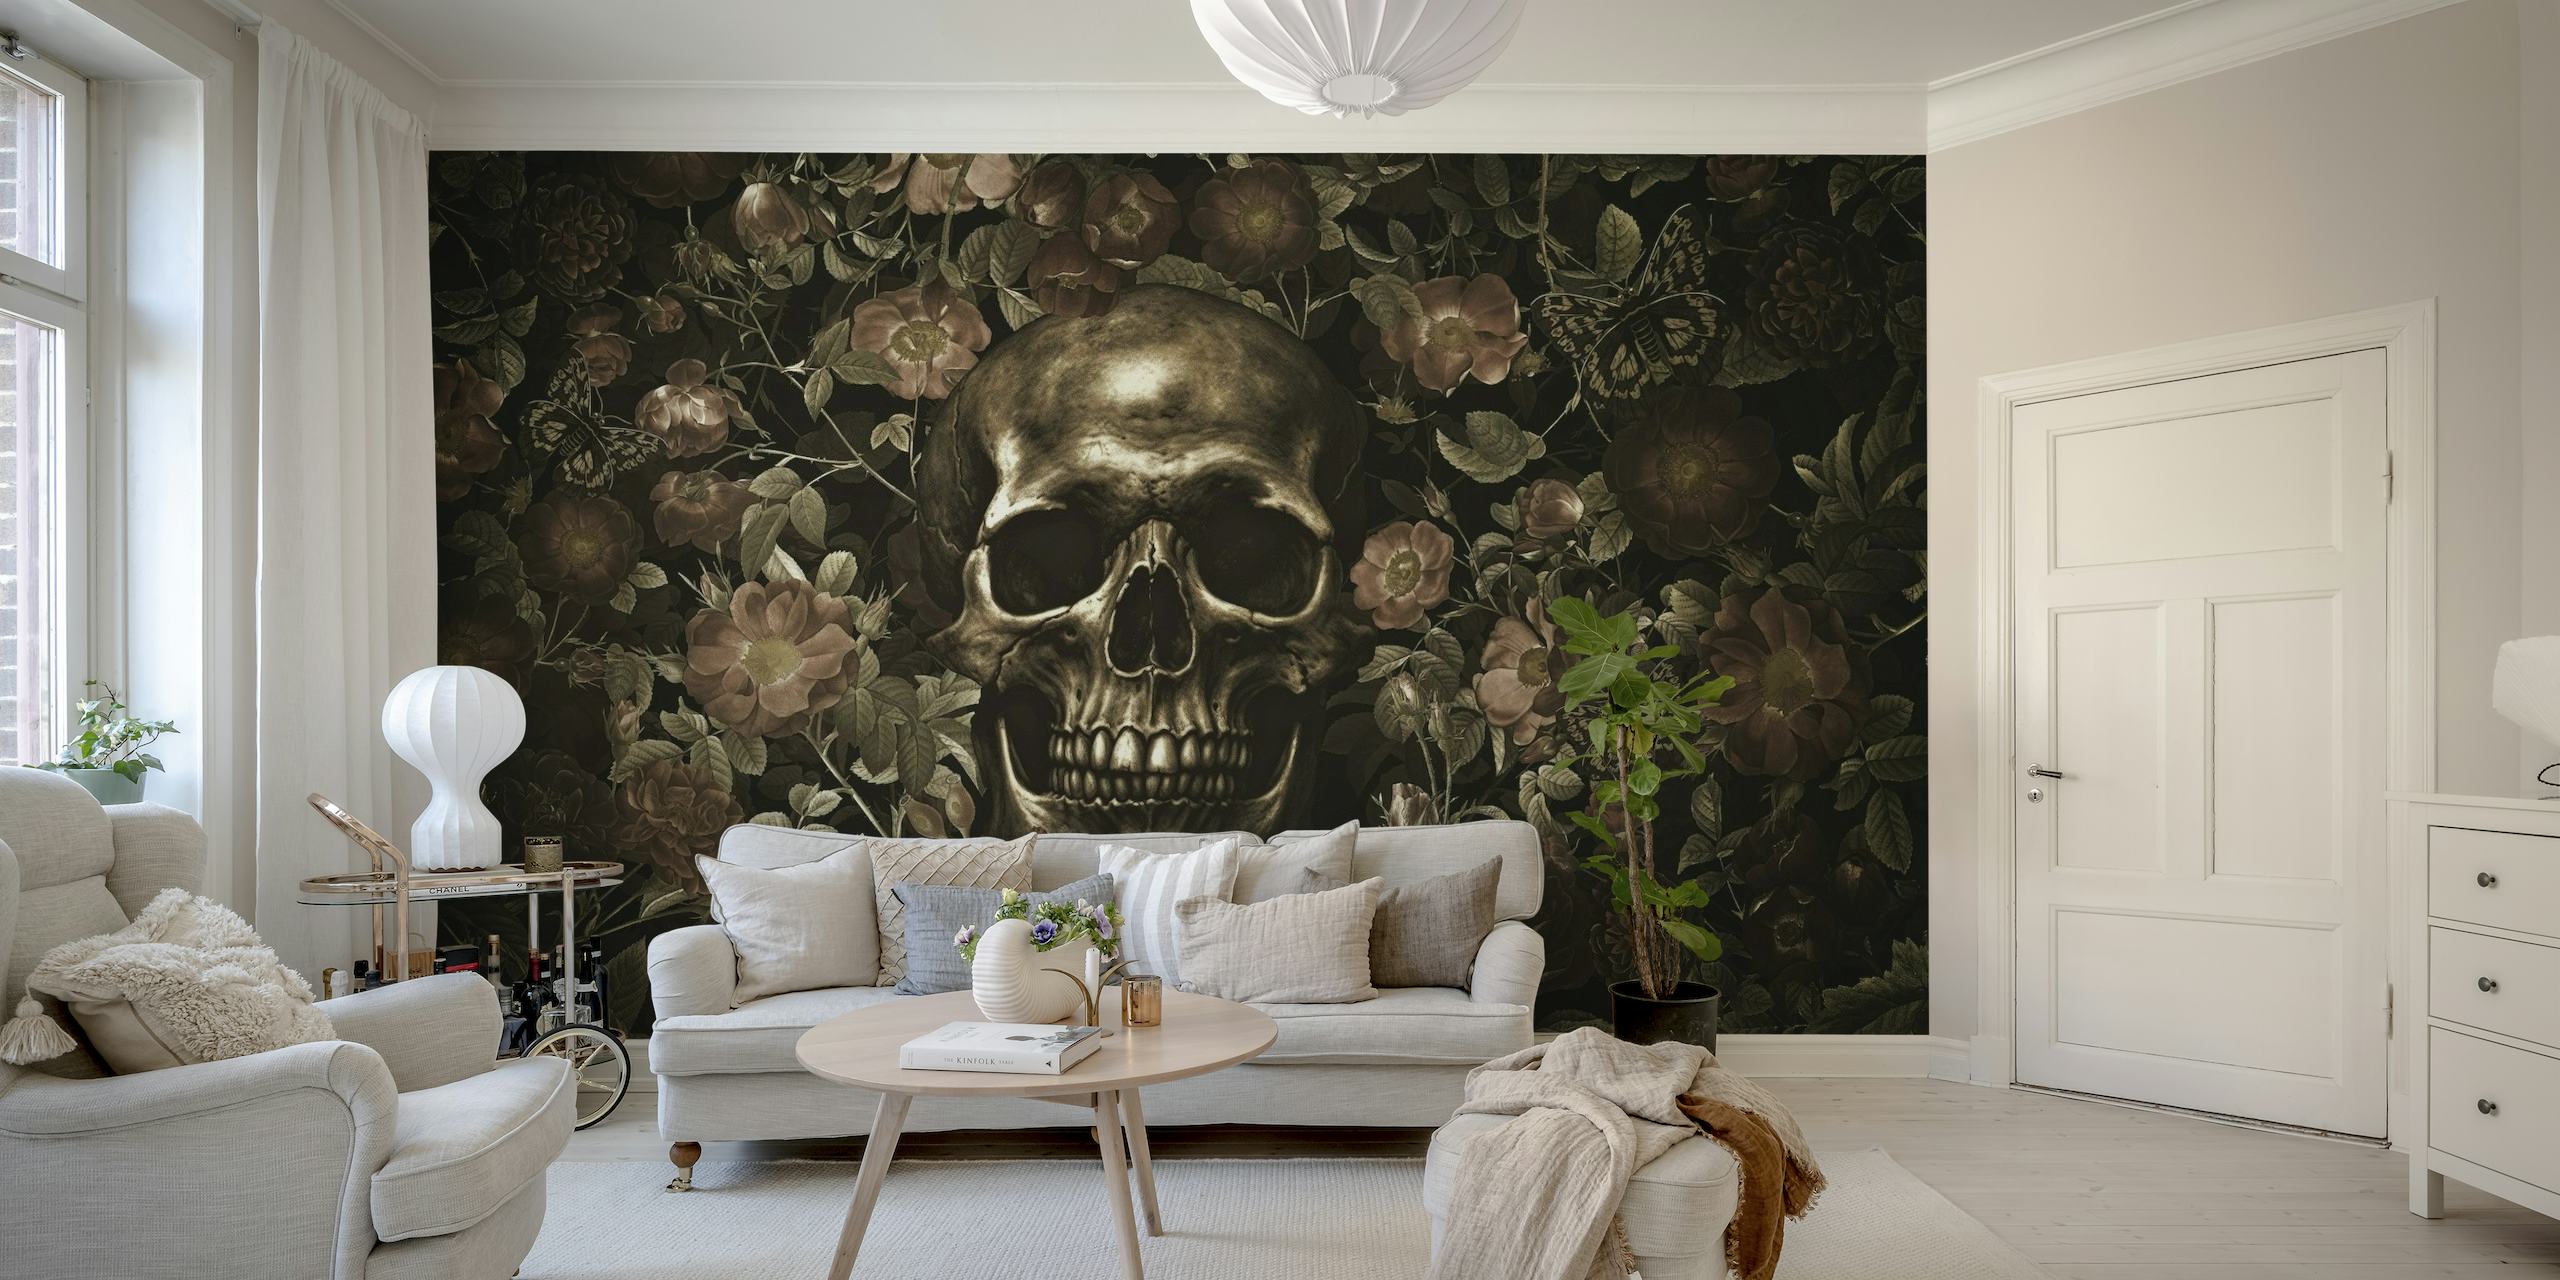 Ein gotisch inspiriertes Wandgemälde mit einem goldenen Totenkopf, umgeben von dunkel blühenden Rosen